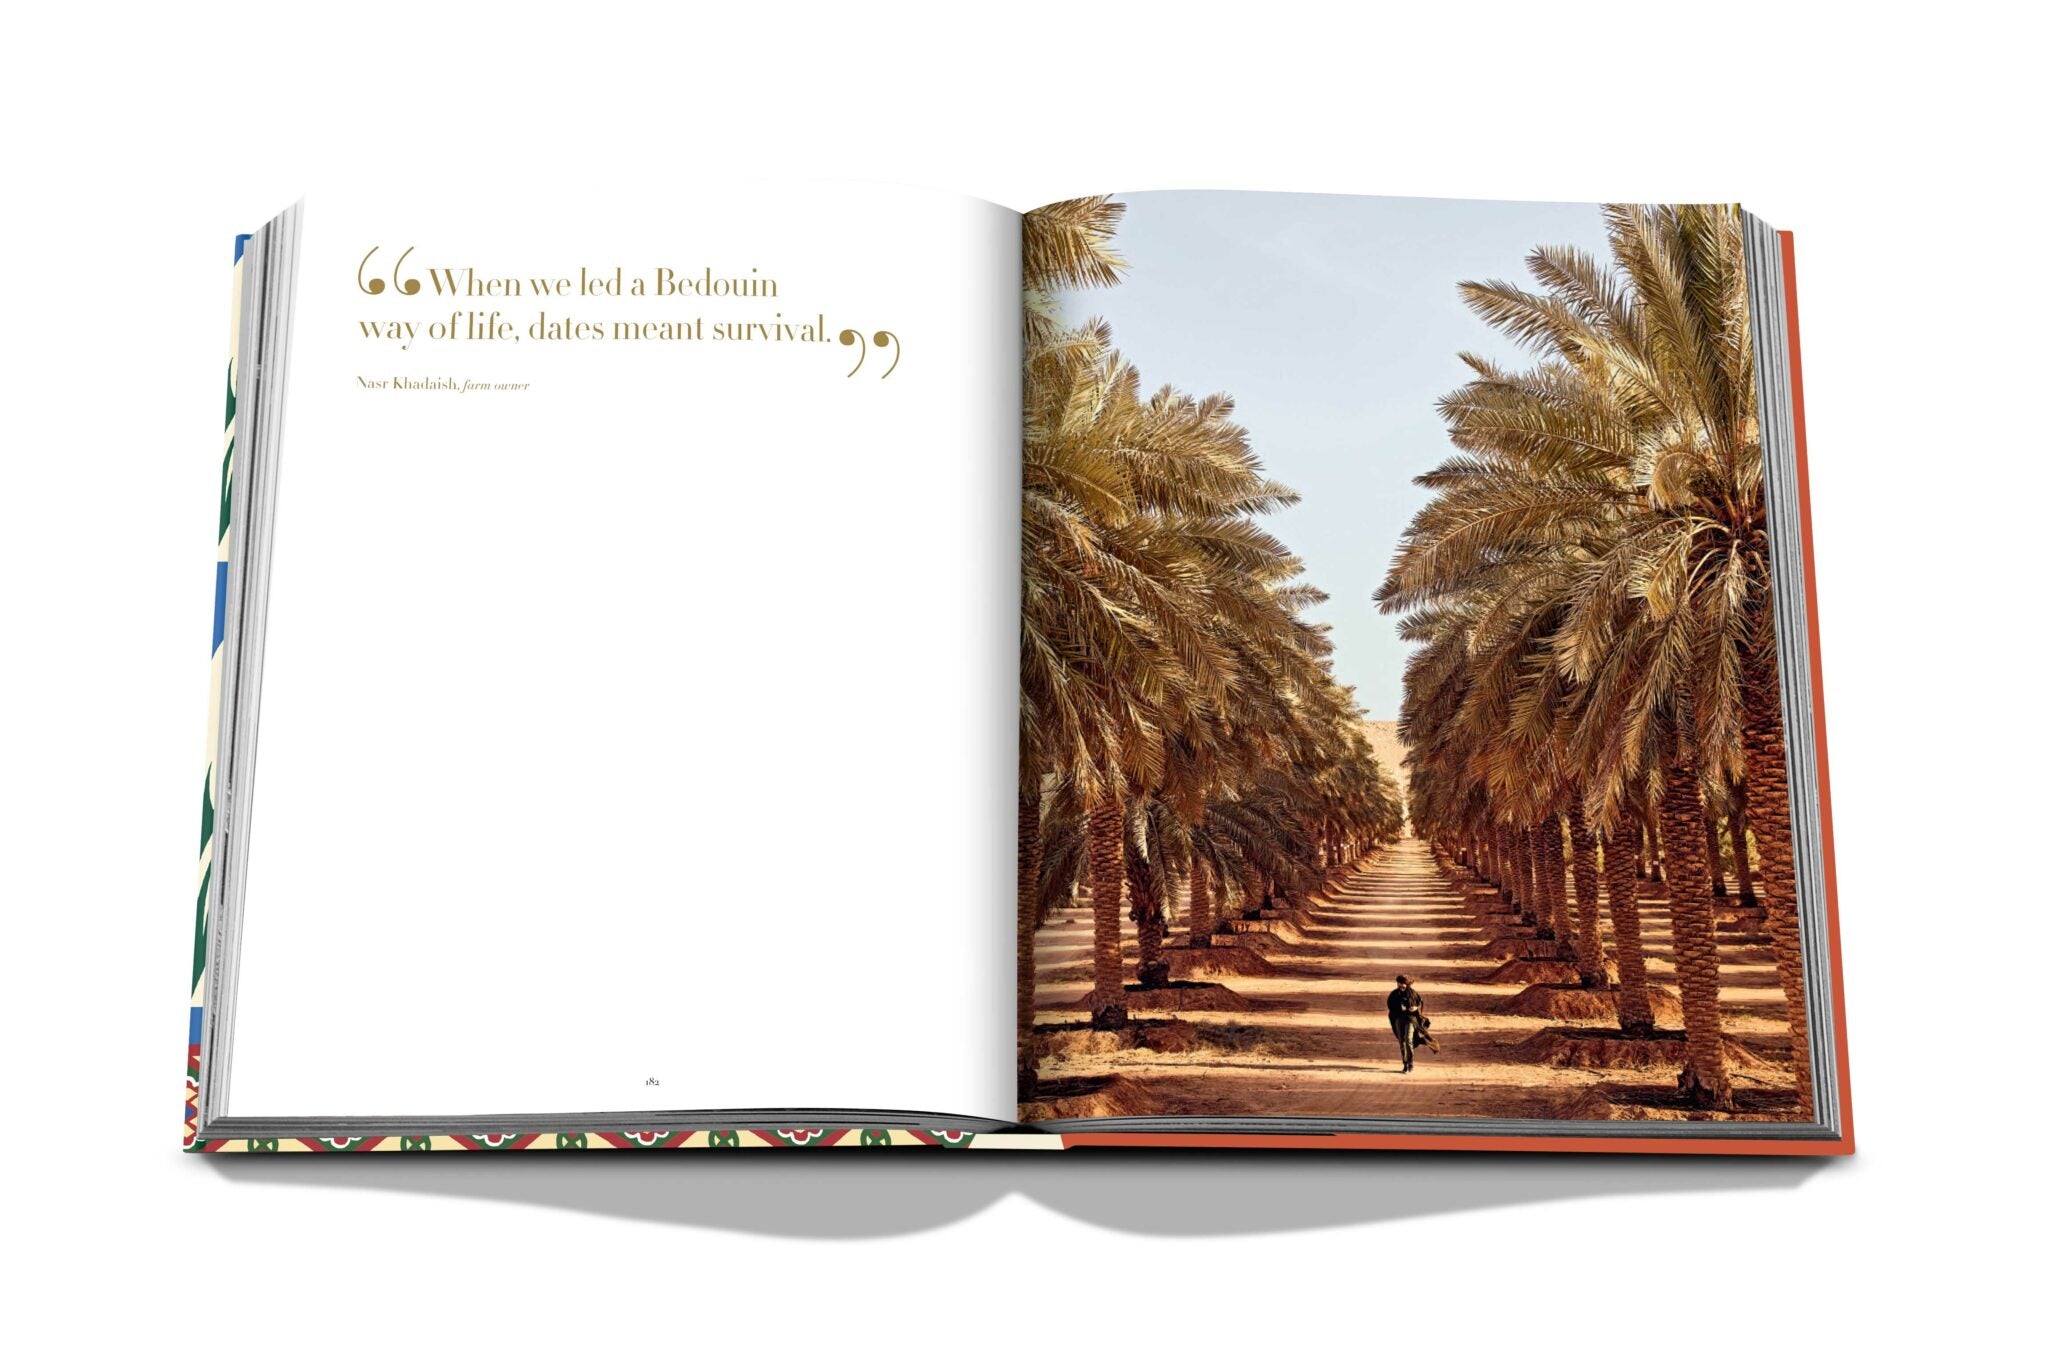 Assouline Saudi -datoer: Et portræt af den hellige frugt